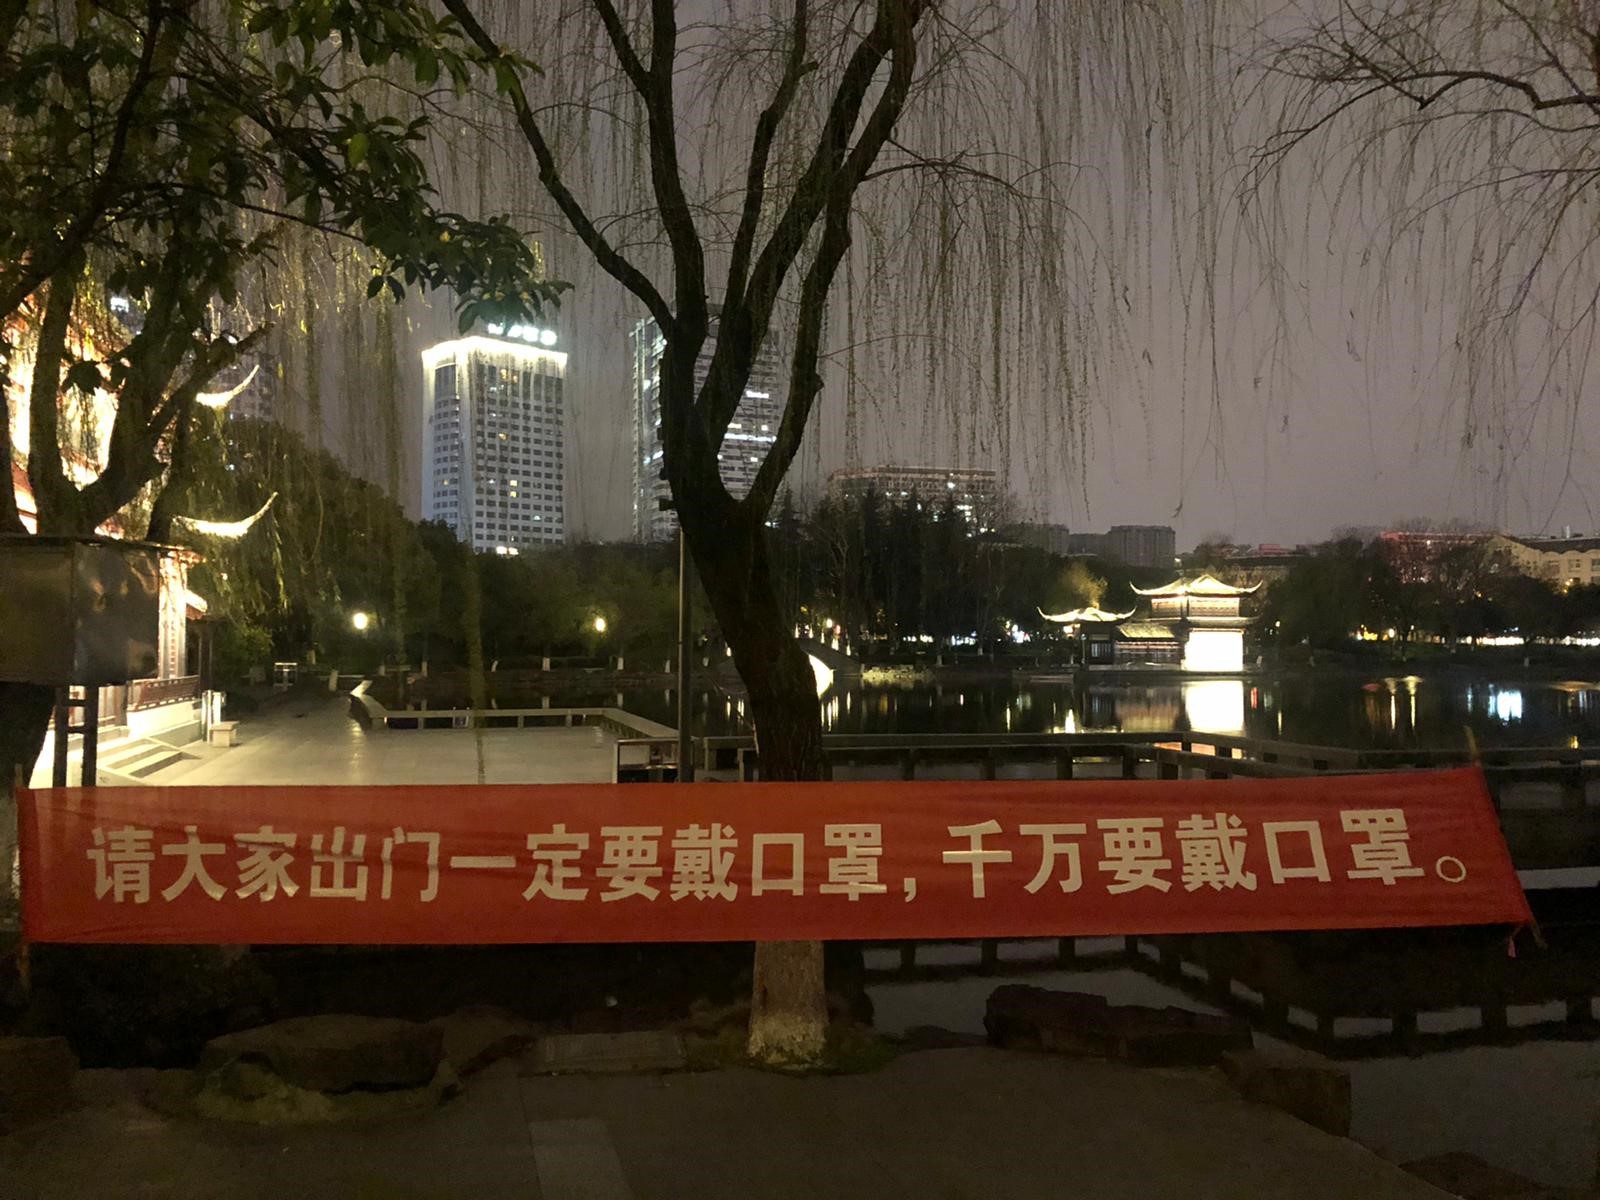 En Shanghai la gente ahora tiene miedo a que una persona se le acerque demasiado